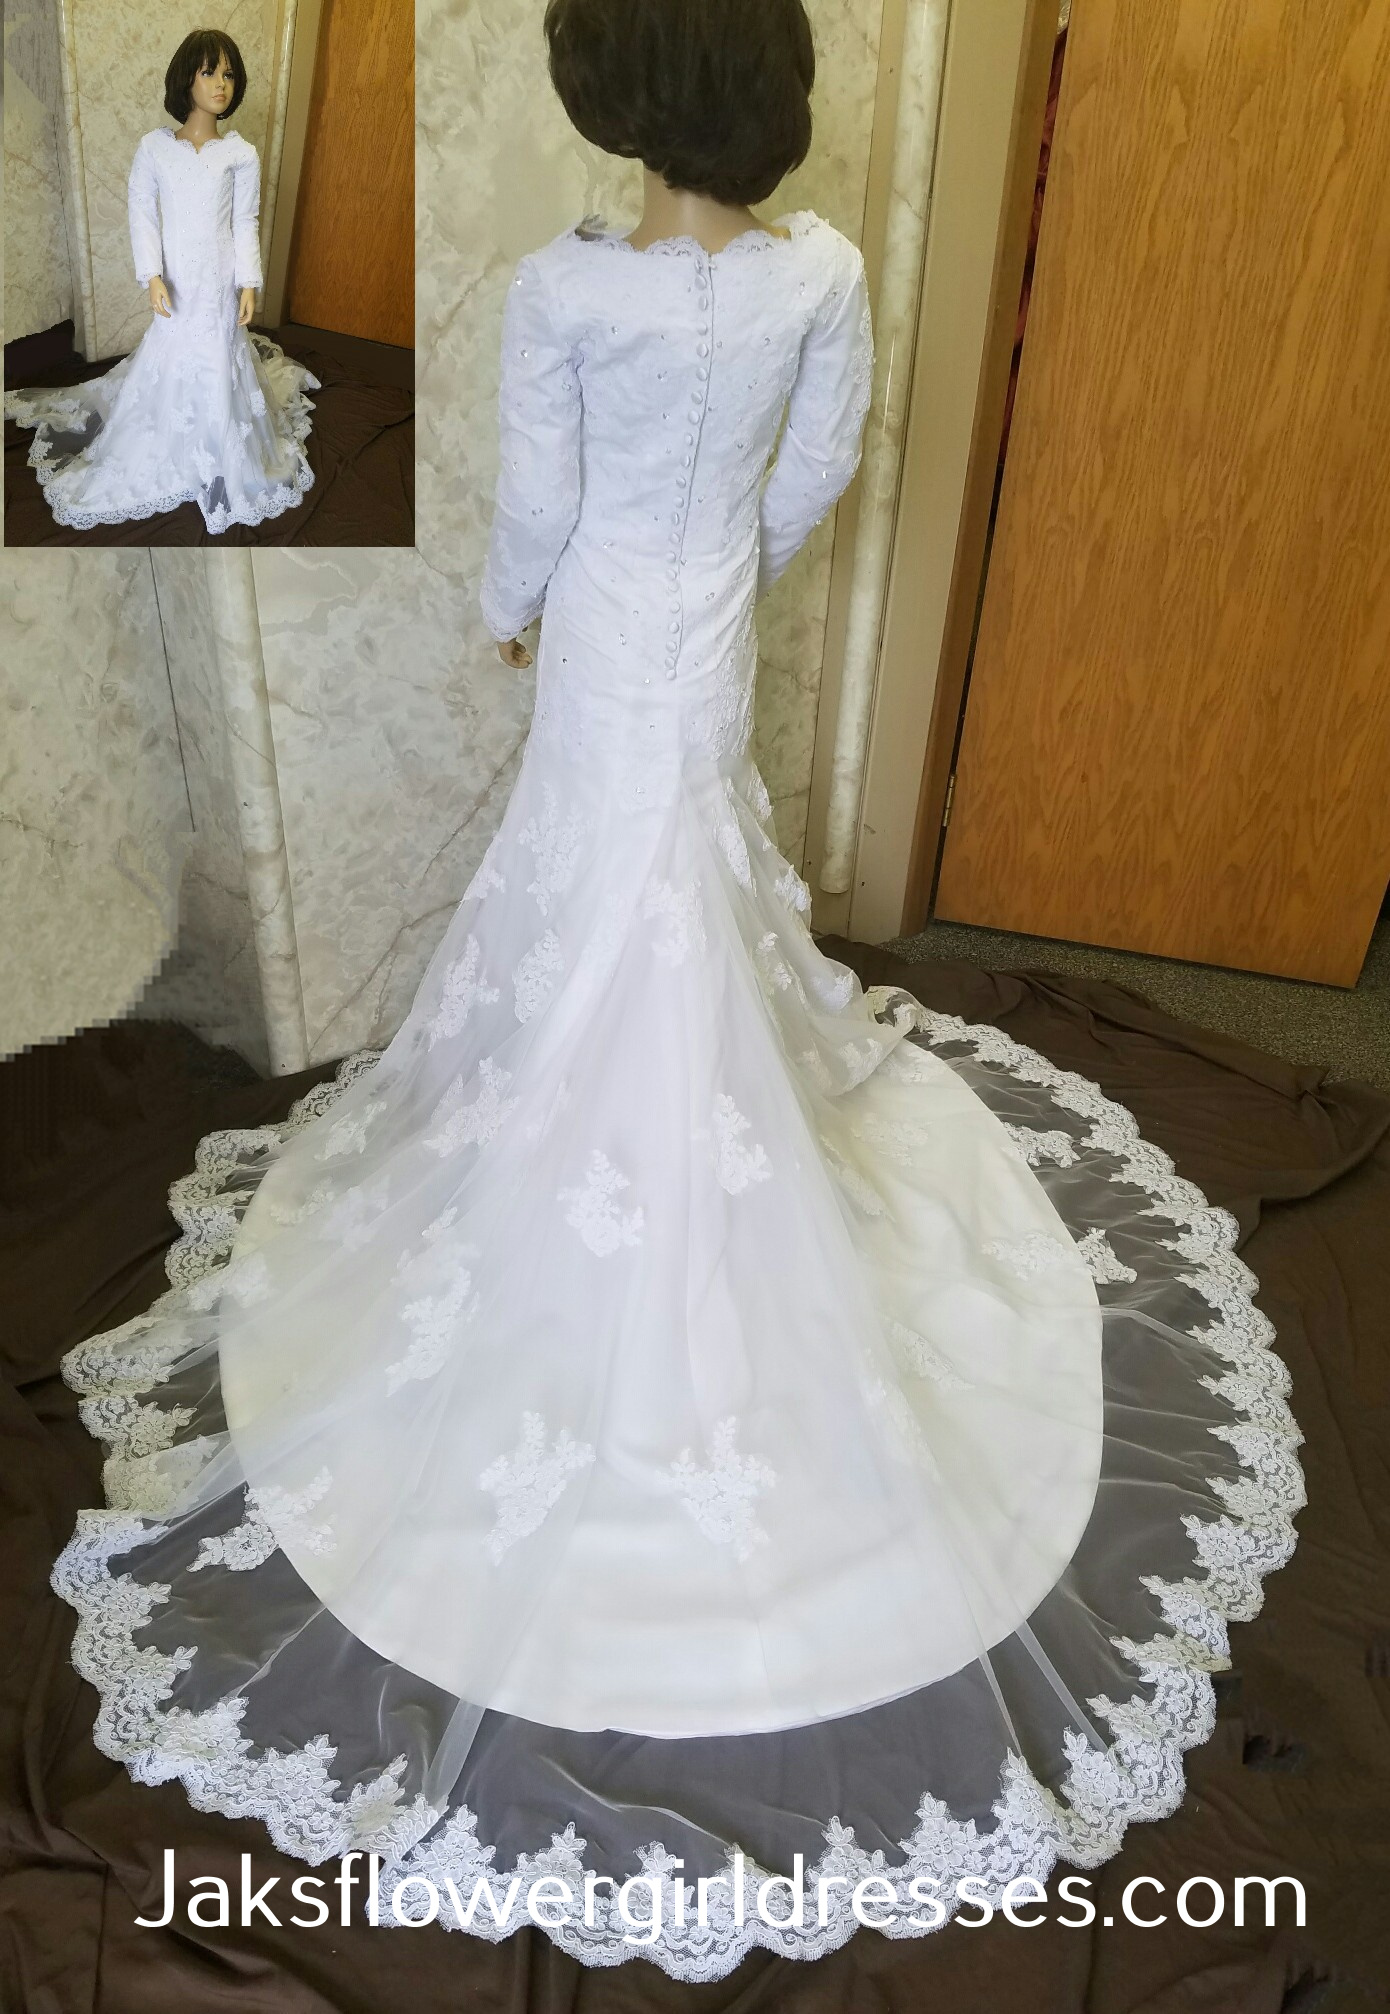 miniature flower girl dresses for weddings